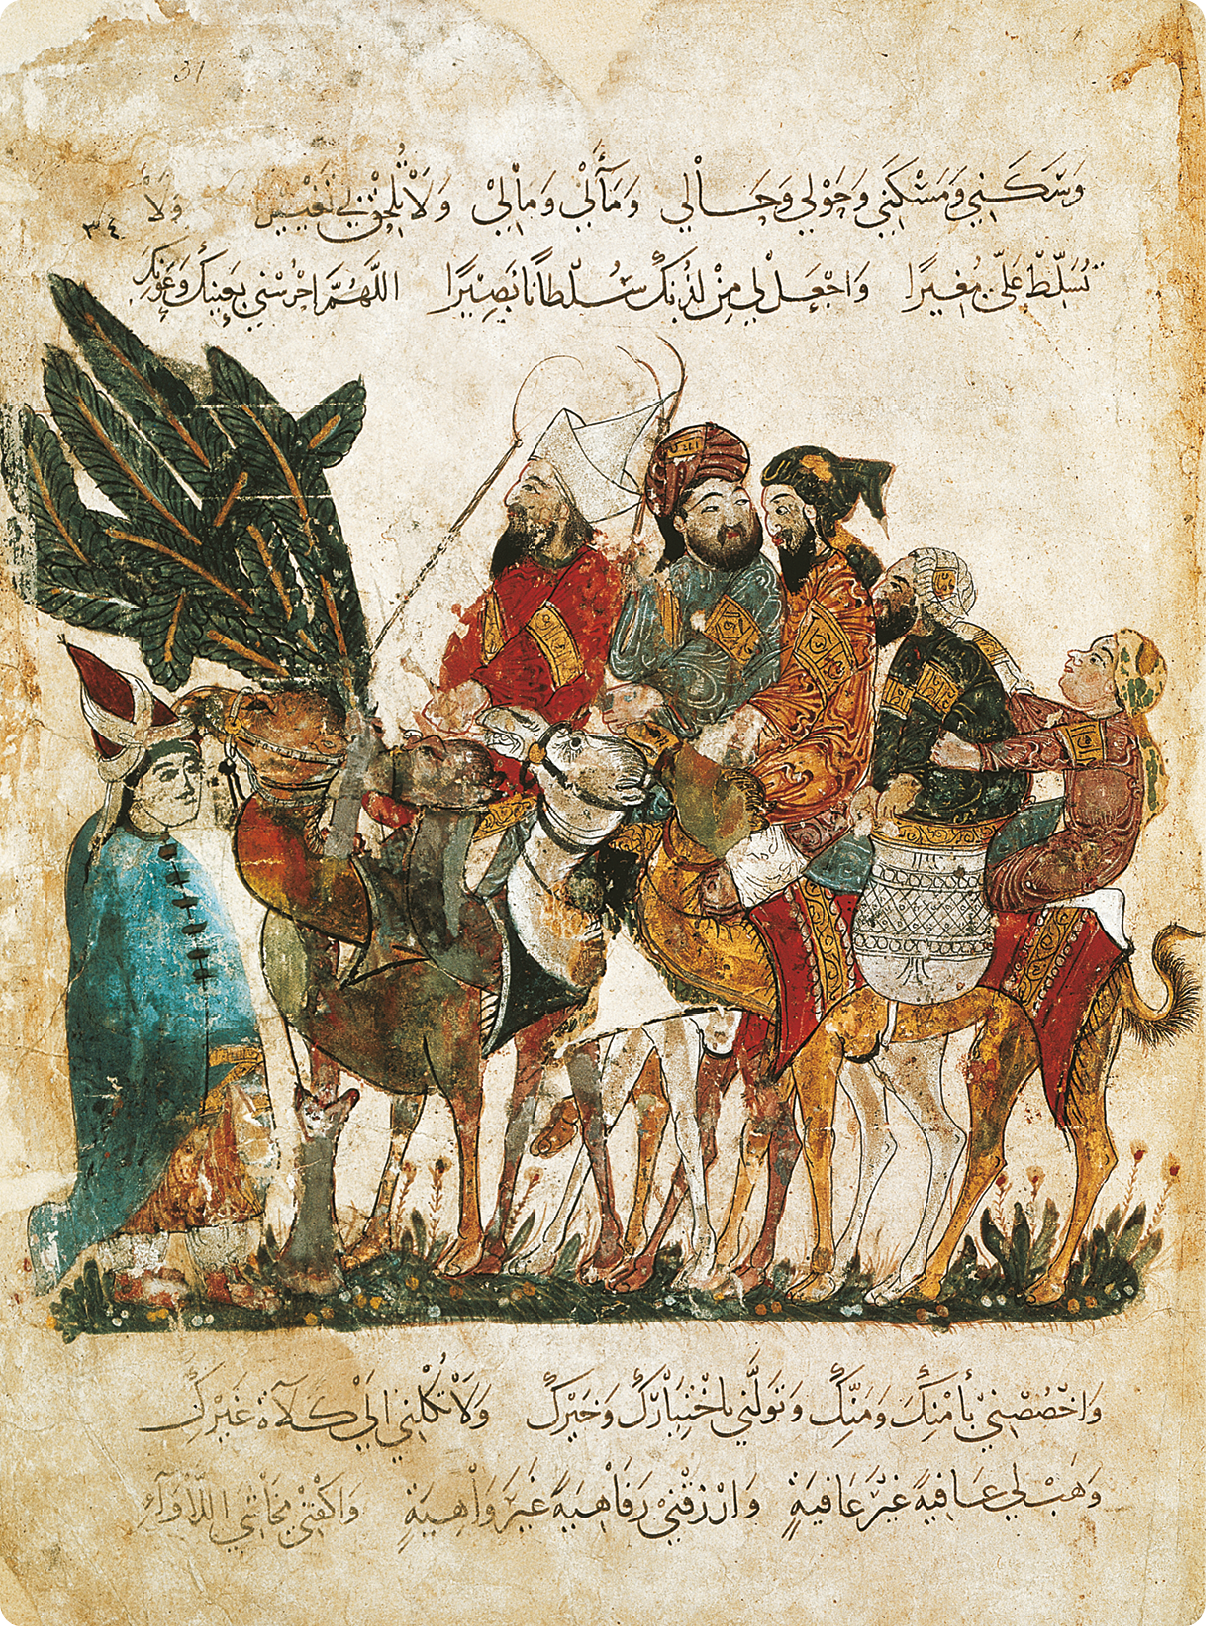 Manuscrito. Na parte superior e inferior, texto com elementos da escrita árabe. Centralizado, ilustração de um homem usando chapéu e túnica azul com botões. Ao lado, cinco homens, usando turbante e túnicas coloridas, montados em camelos.